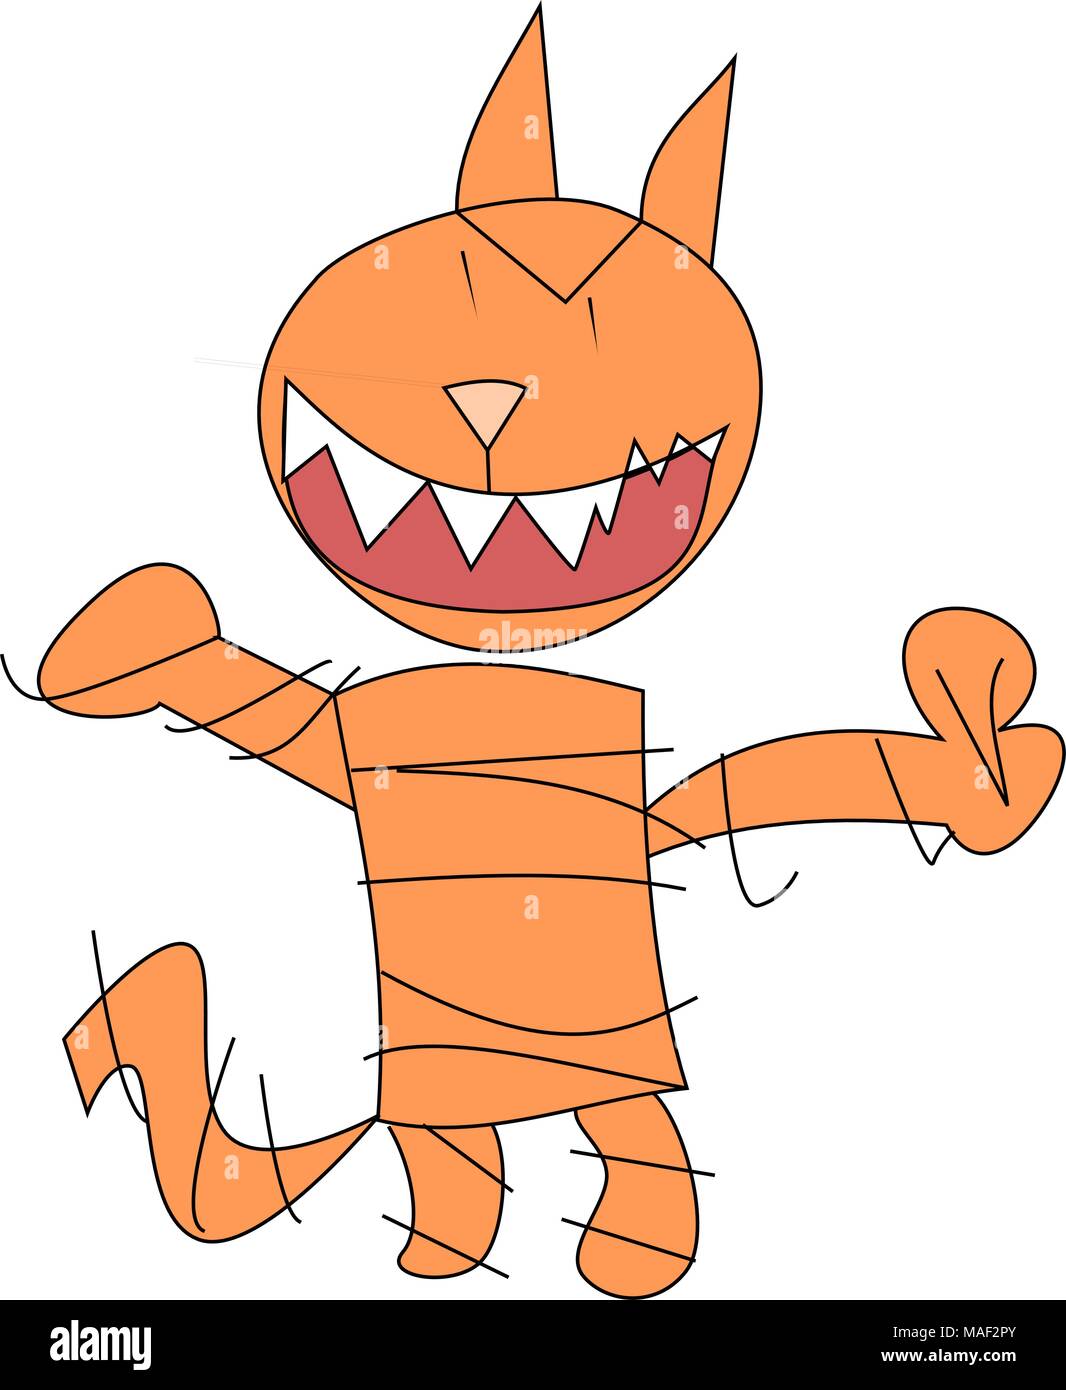 Gato loco malvado dibujado al estilo de un niño pequeño. Sonrisa diabólica color naranja aunque personalizable. Stock Vector